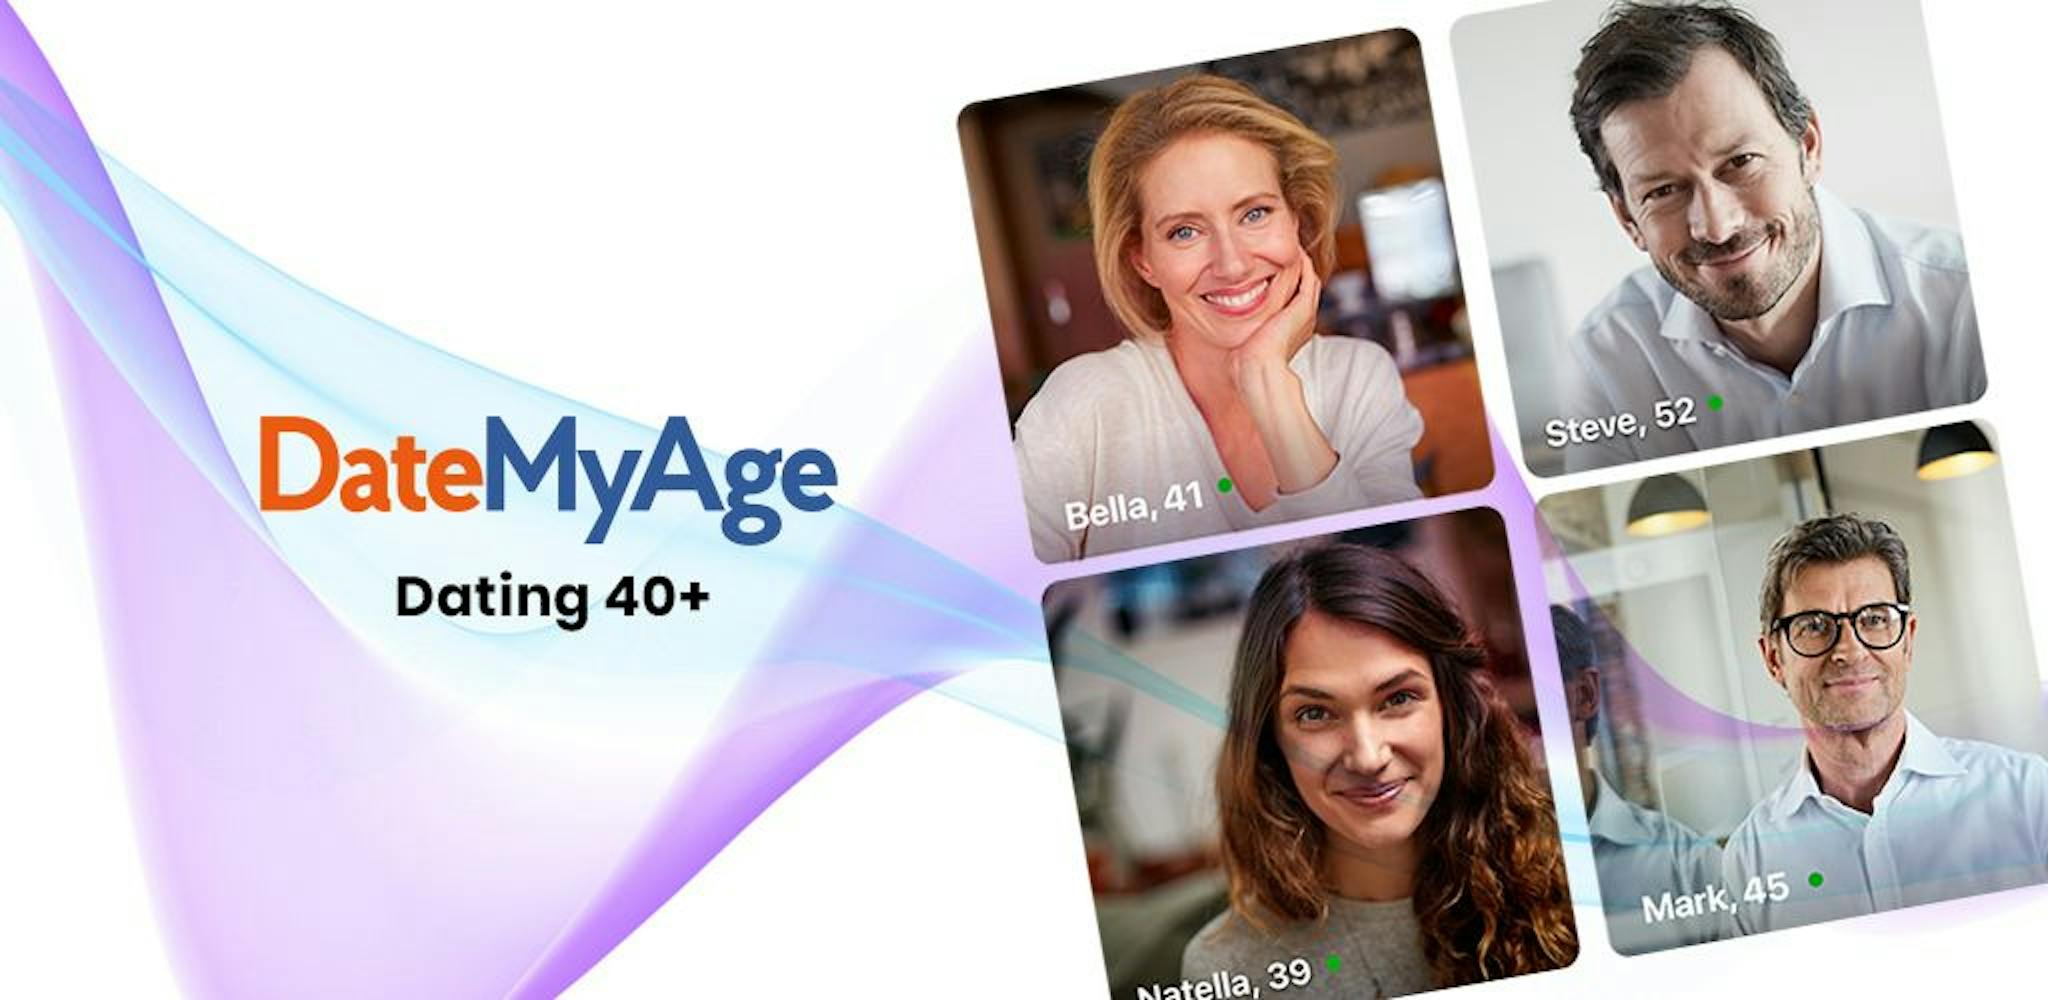 DateMyAge - Social Discovery Group'un 40 yaşın üzerindeki bireylere yönelik niş bir flört uygulaması